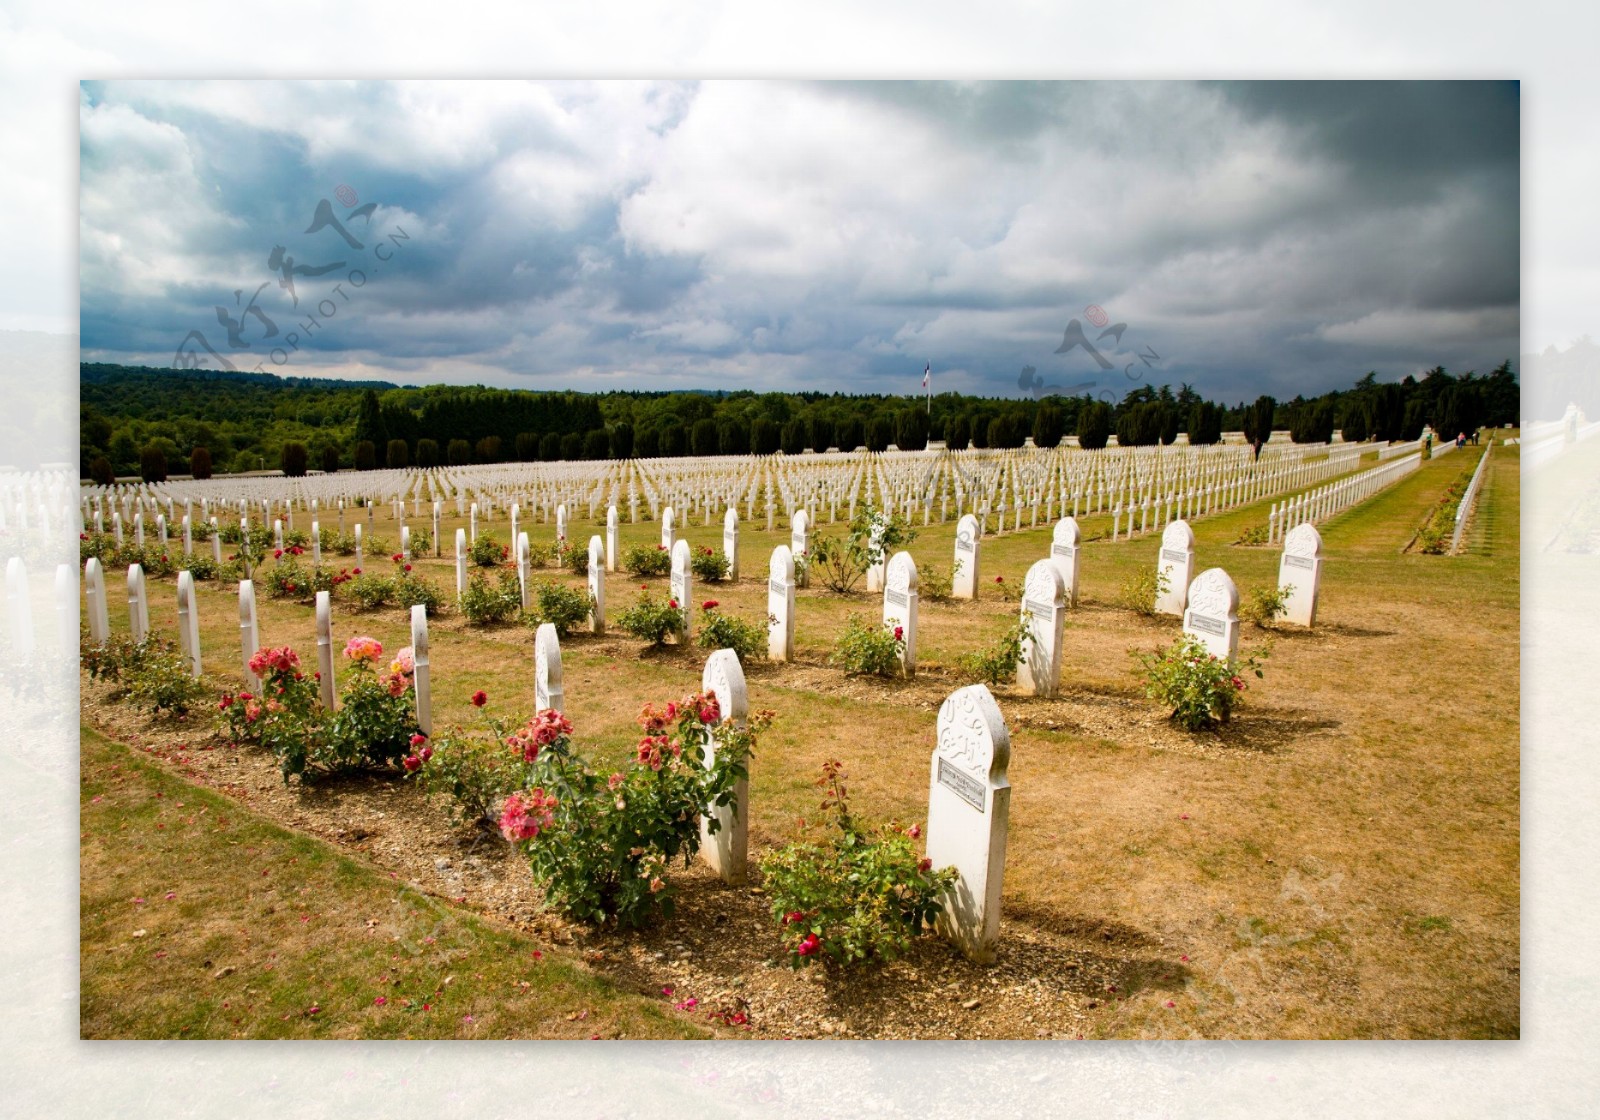 法国凡尔登纪念公墓风景